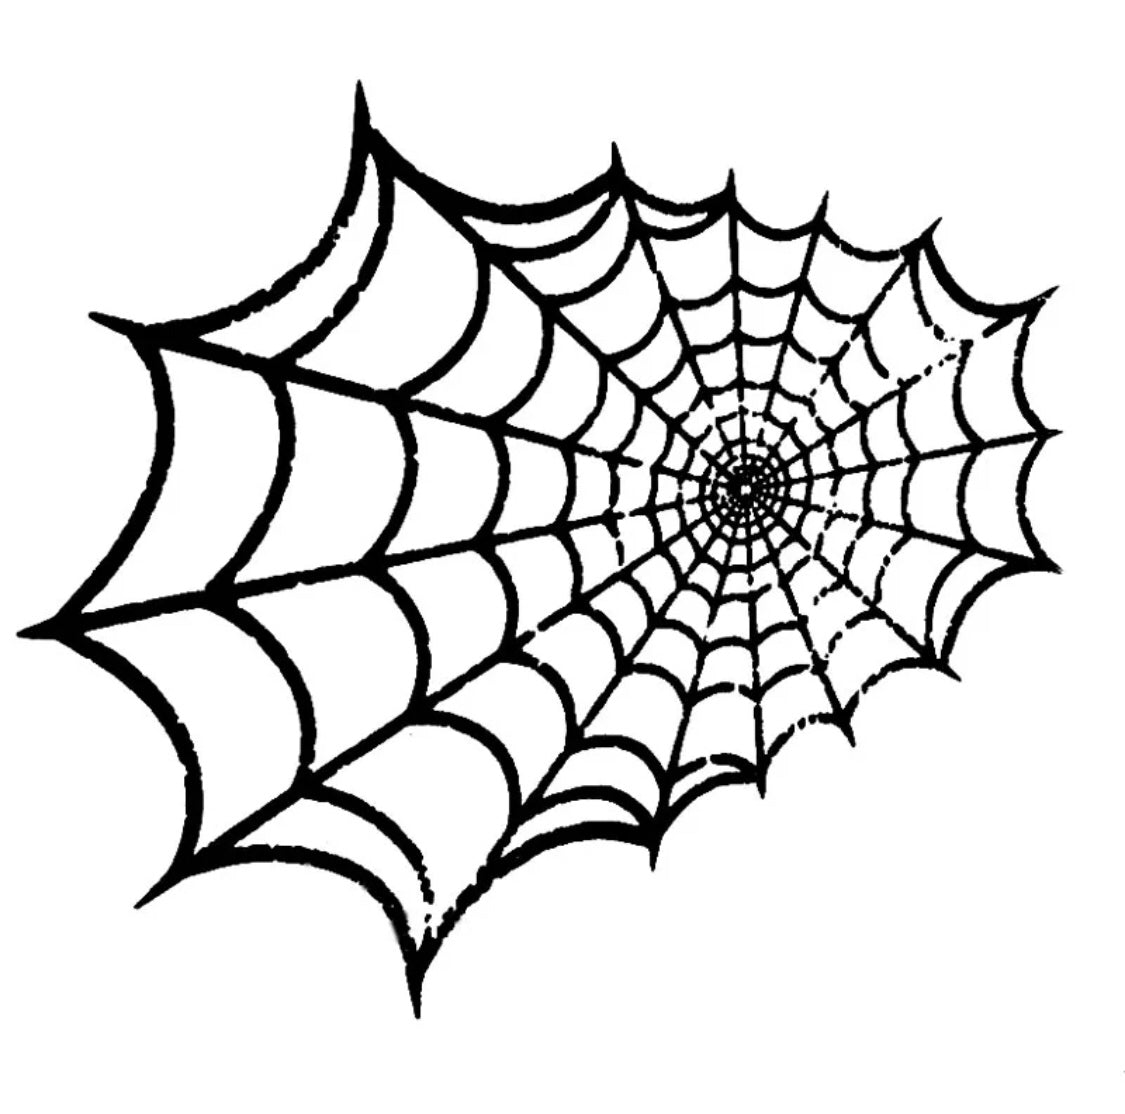 Spiderweb Wall Sticker #3